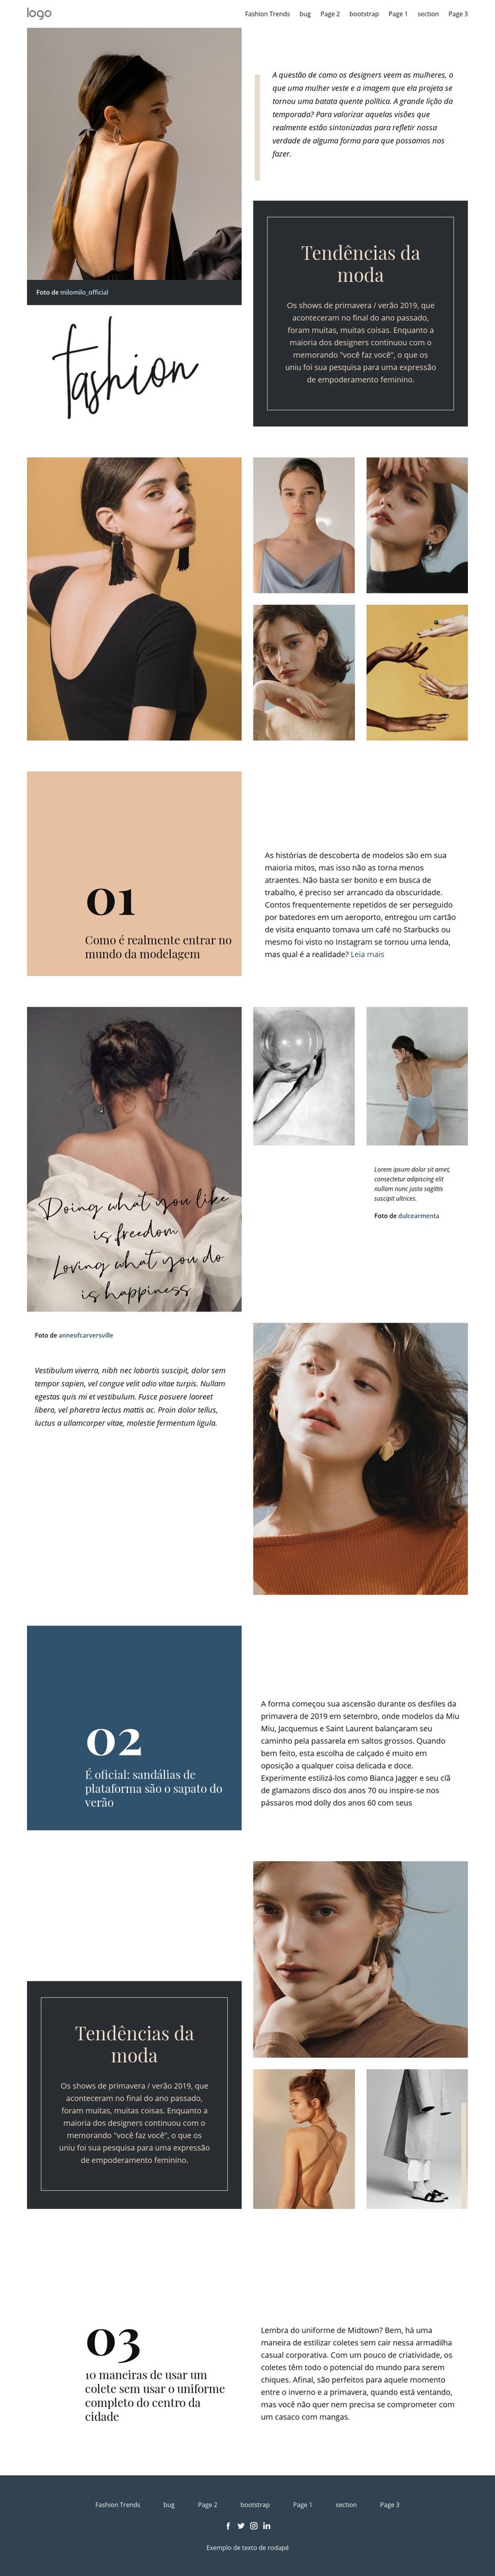 Visão do designer de moda Modelo de uma página